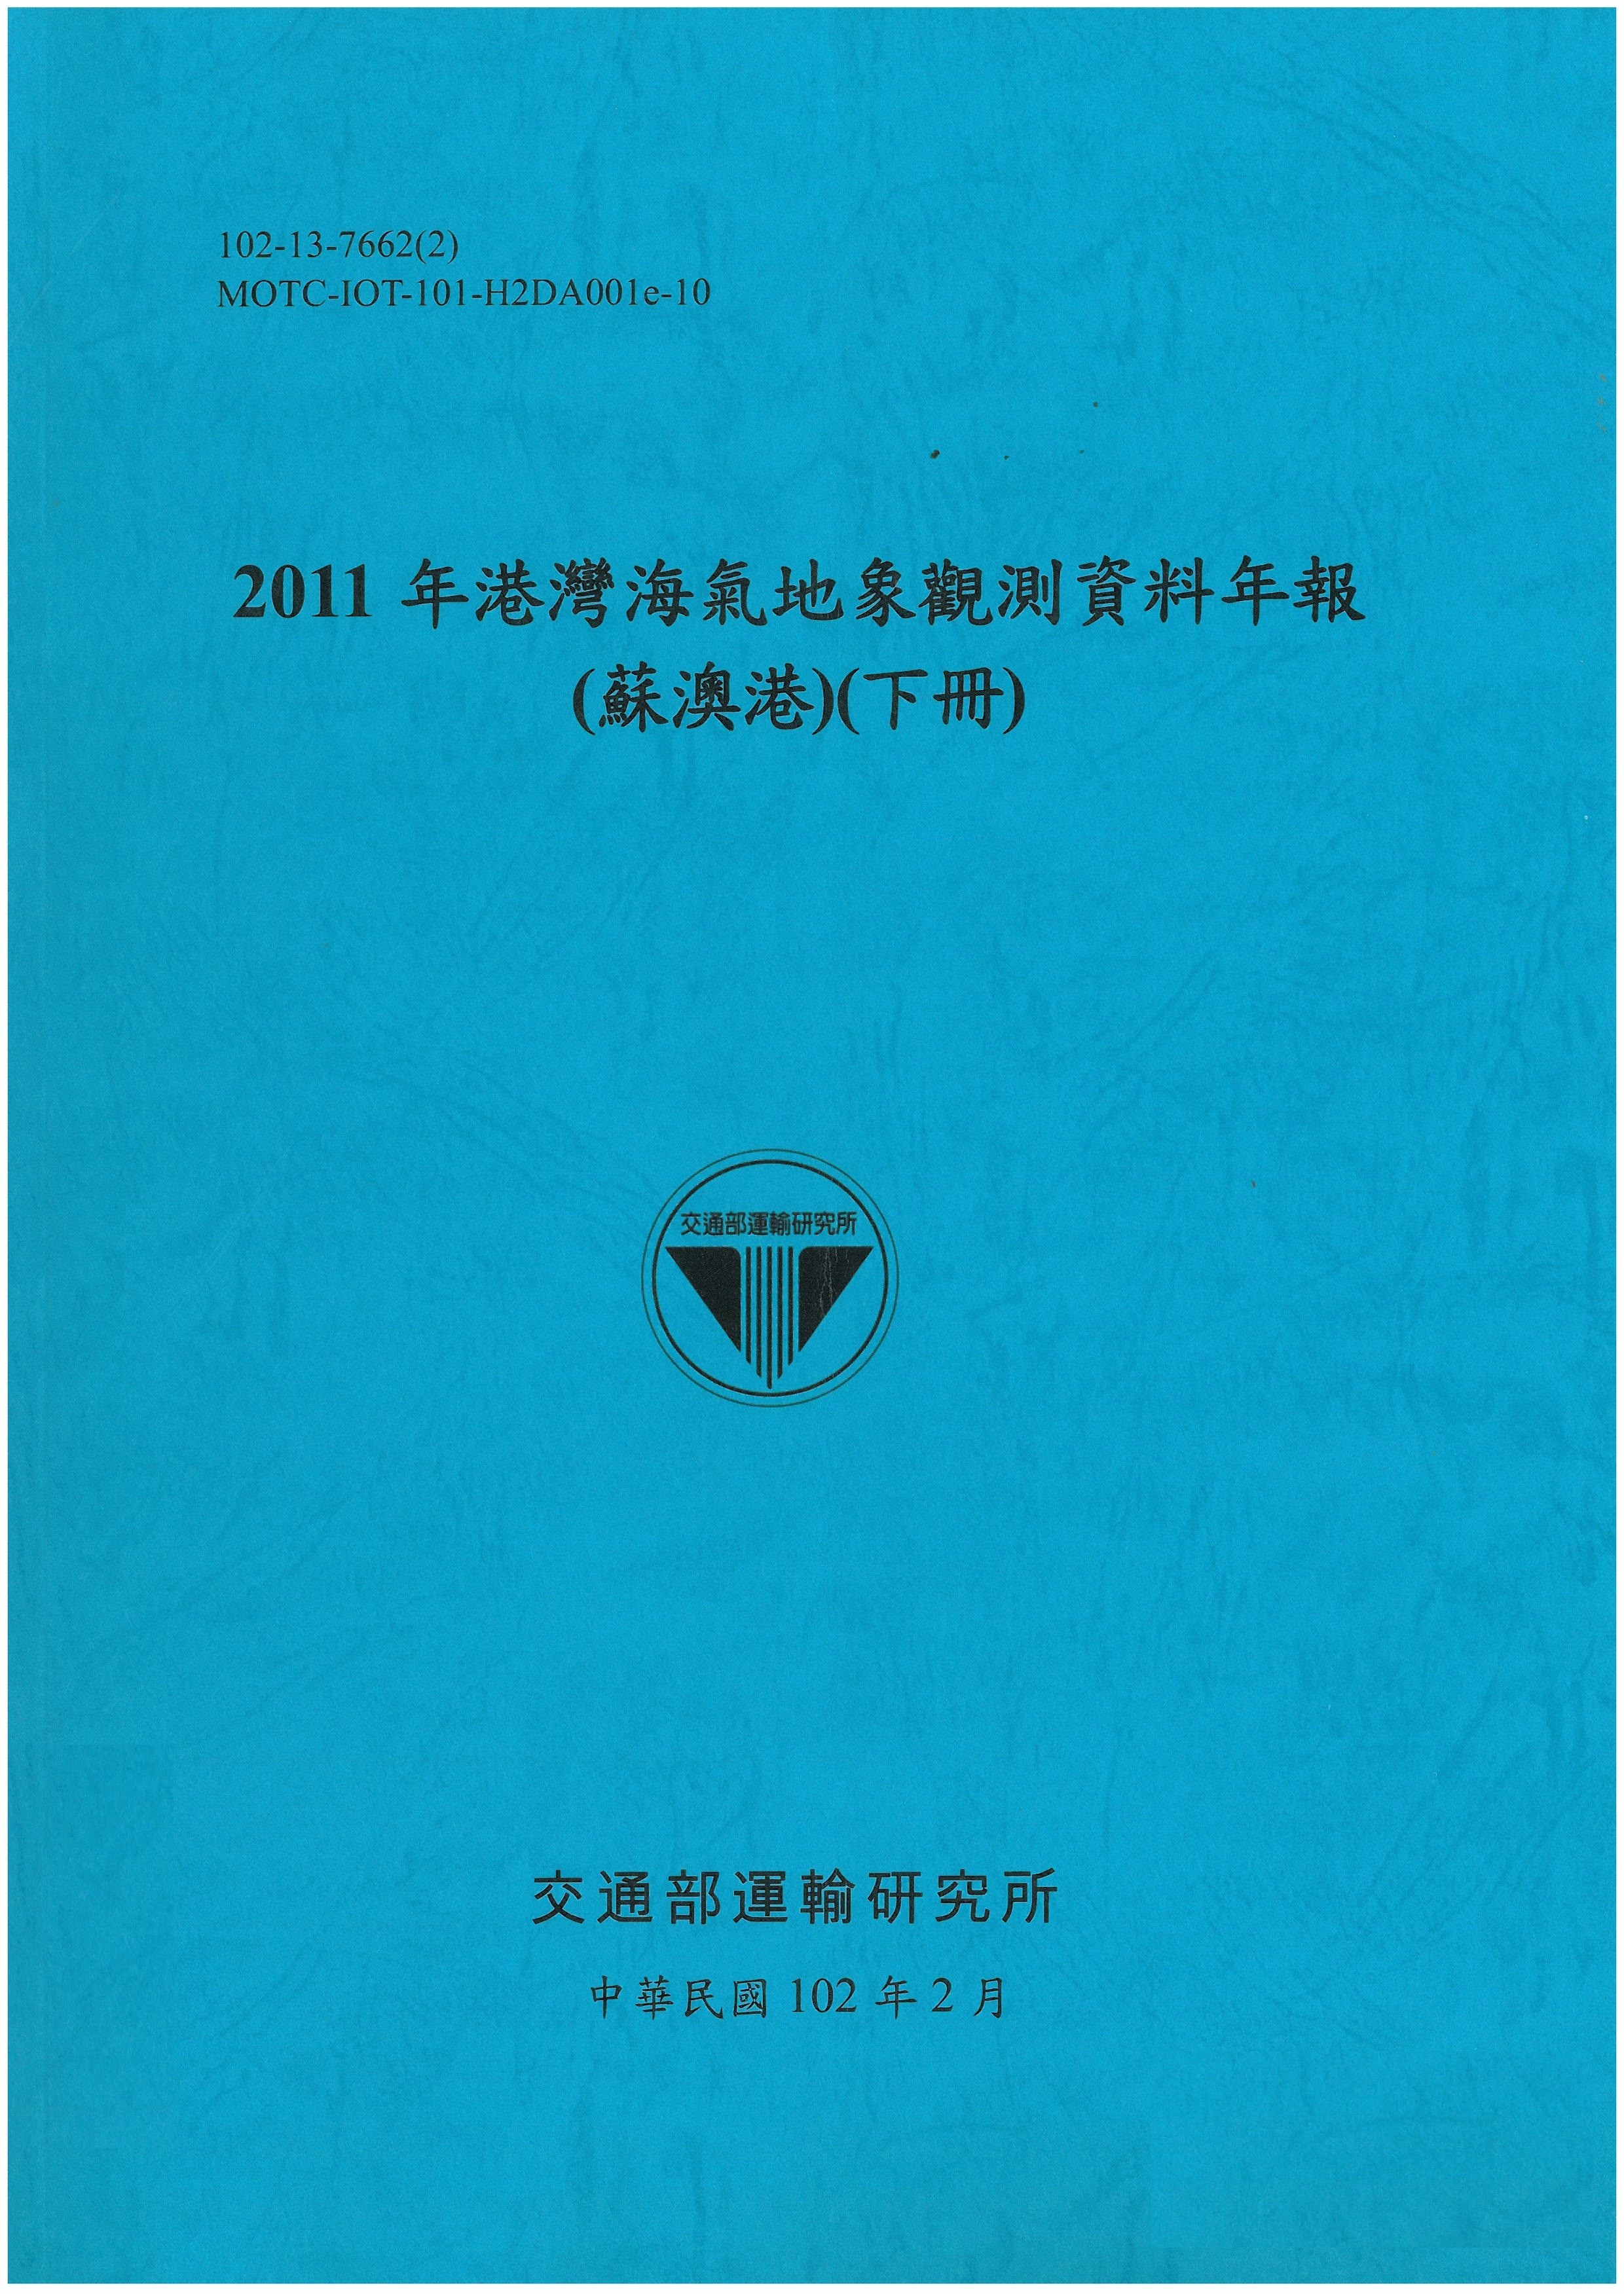 2011年港灣海氣地象觀測資料年報(蘇澳港)(下冊)